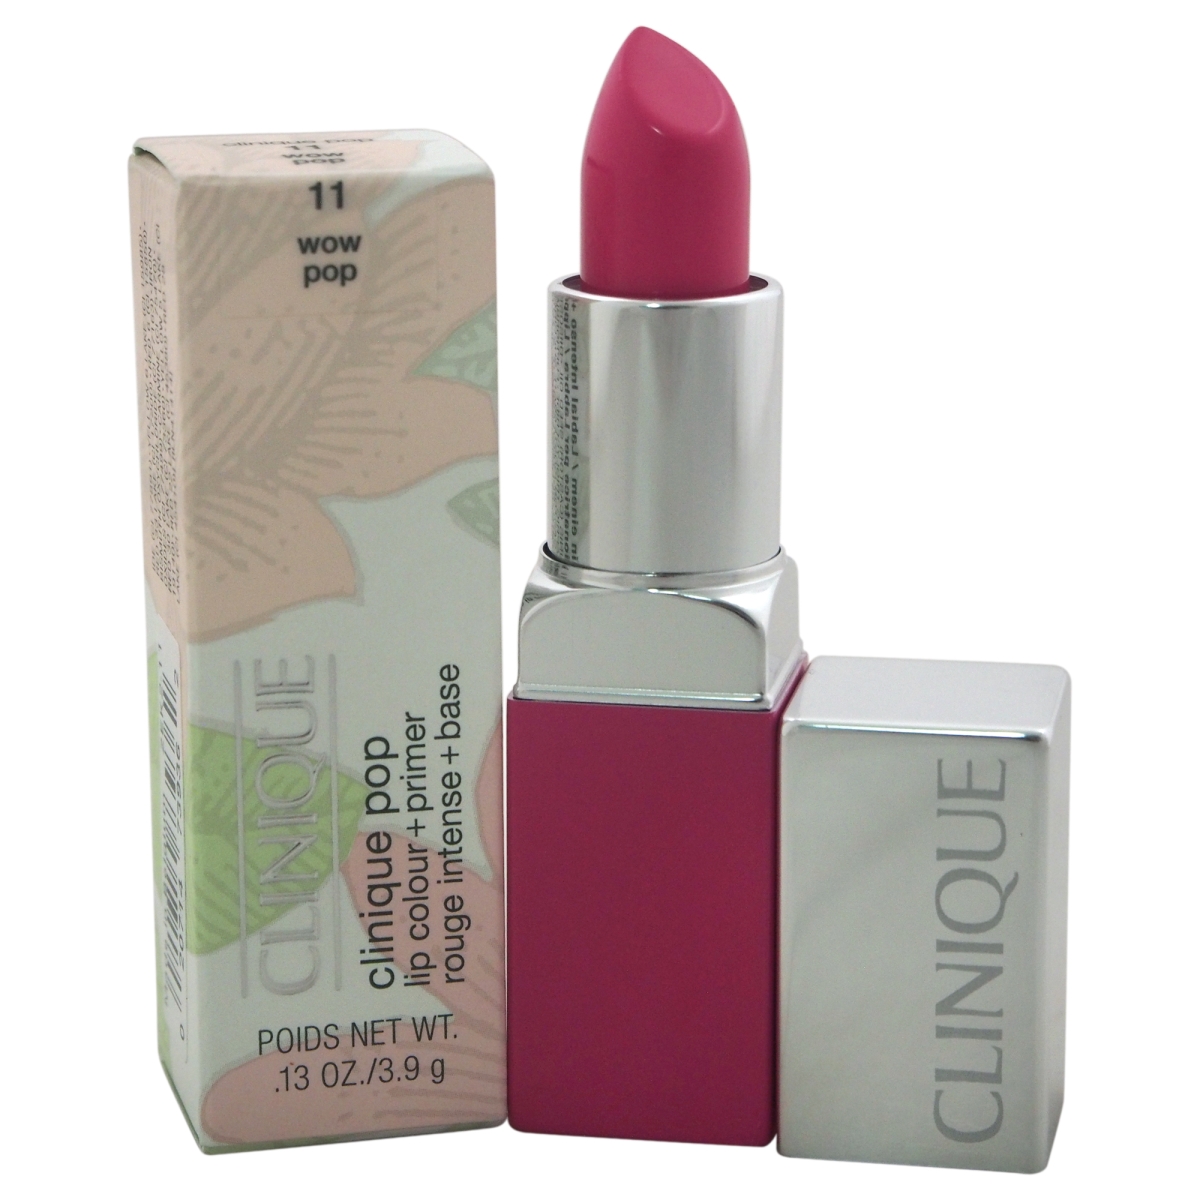 W-c-6776 Pop Lip Colour Plus Primer - No. 11 Wow Pop Lipstick For Women - 0.13 Oz